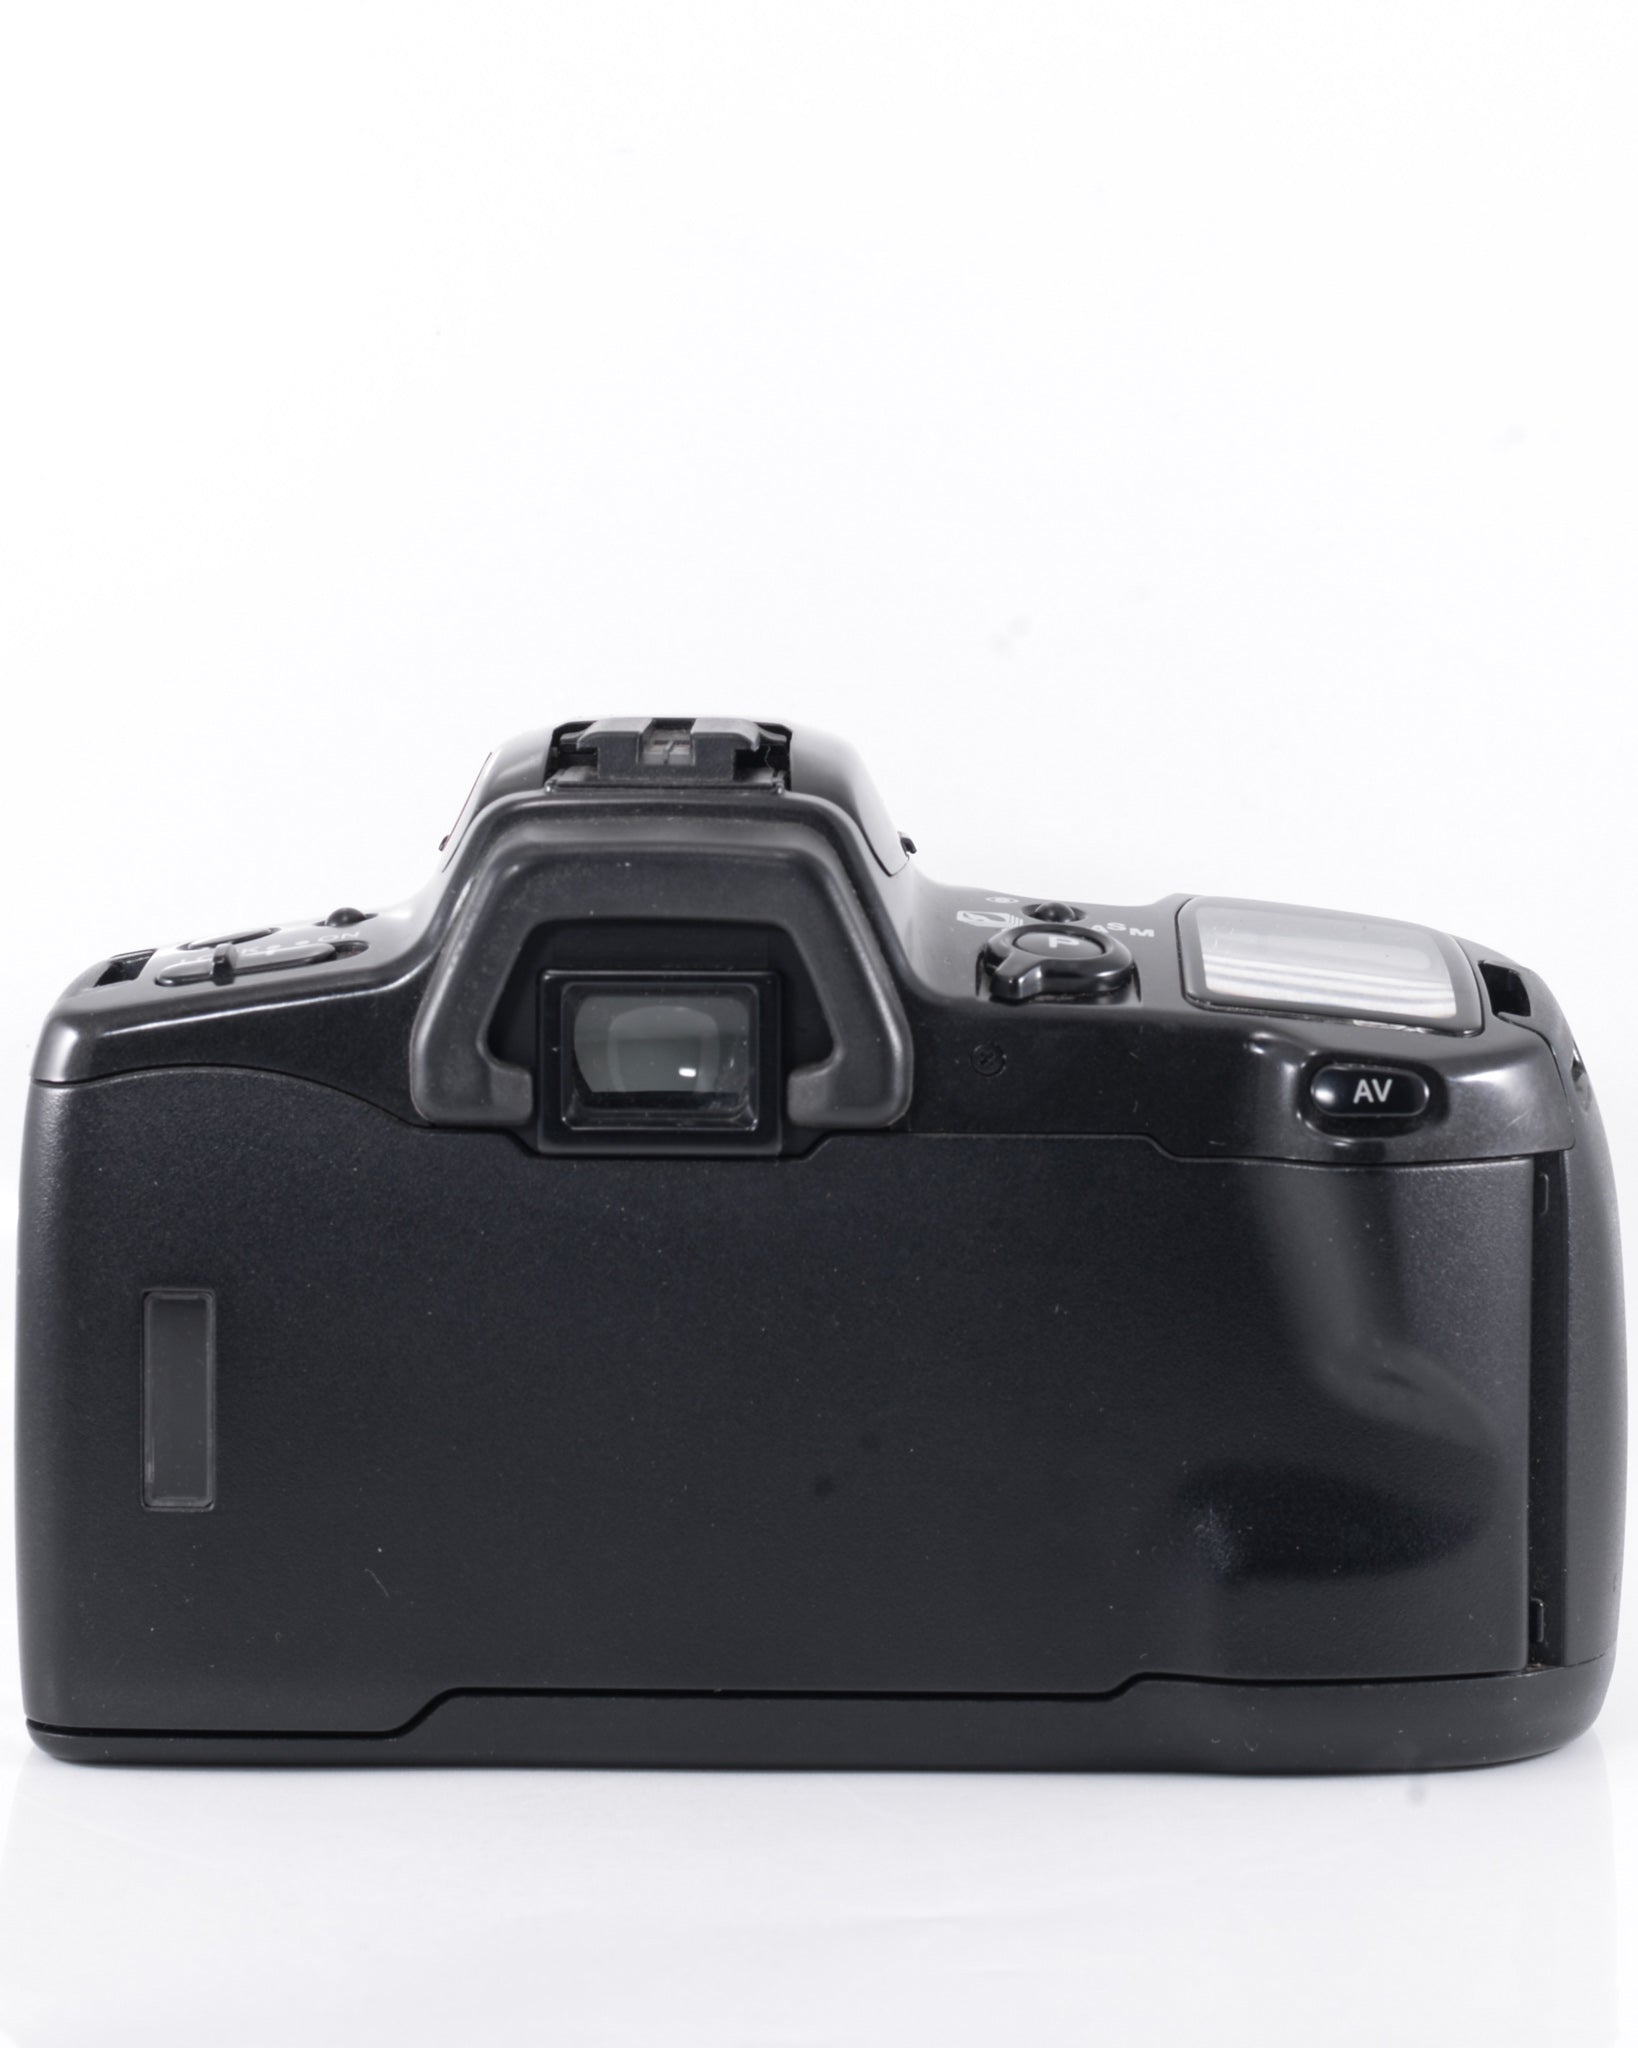 Minolta Dynax 500si 35mm SLR film camera with 50mm f3.5 macro lens